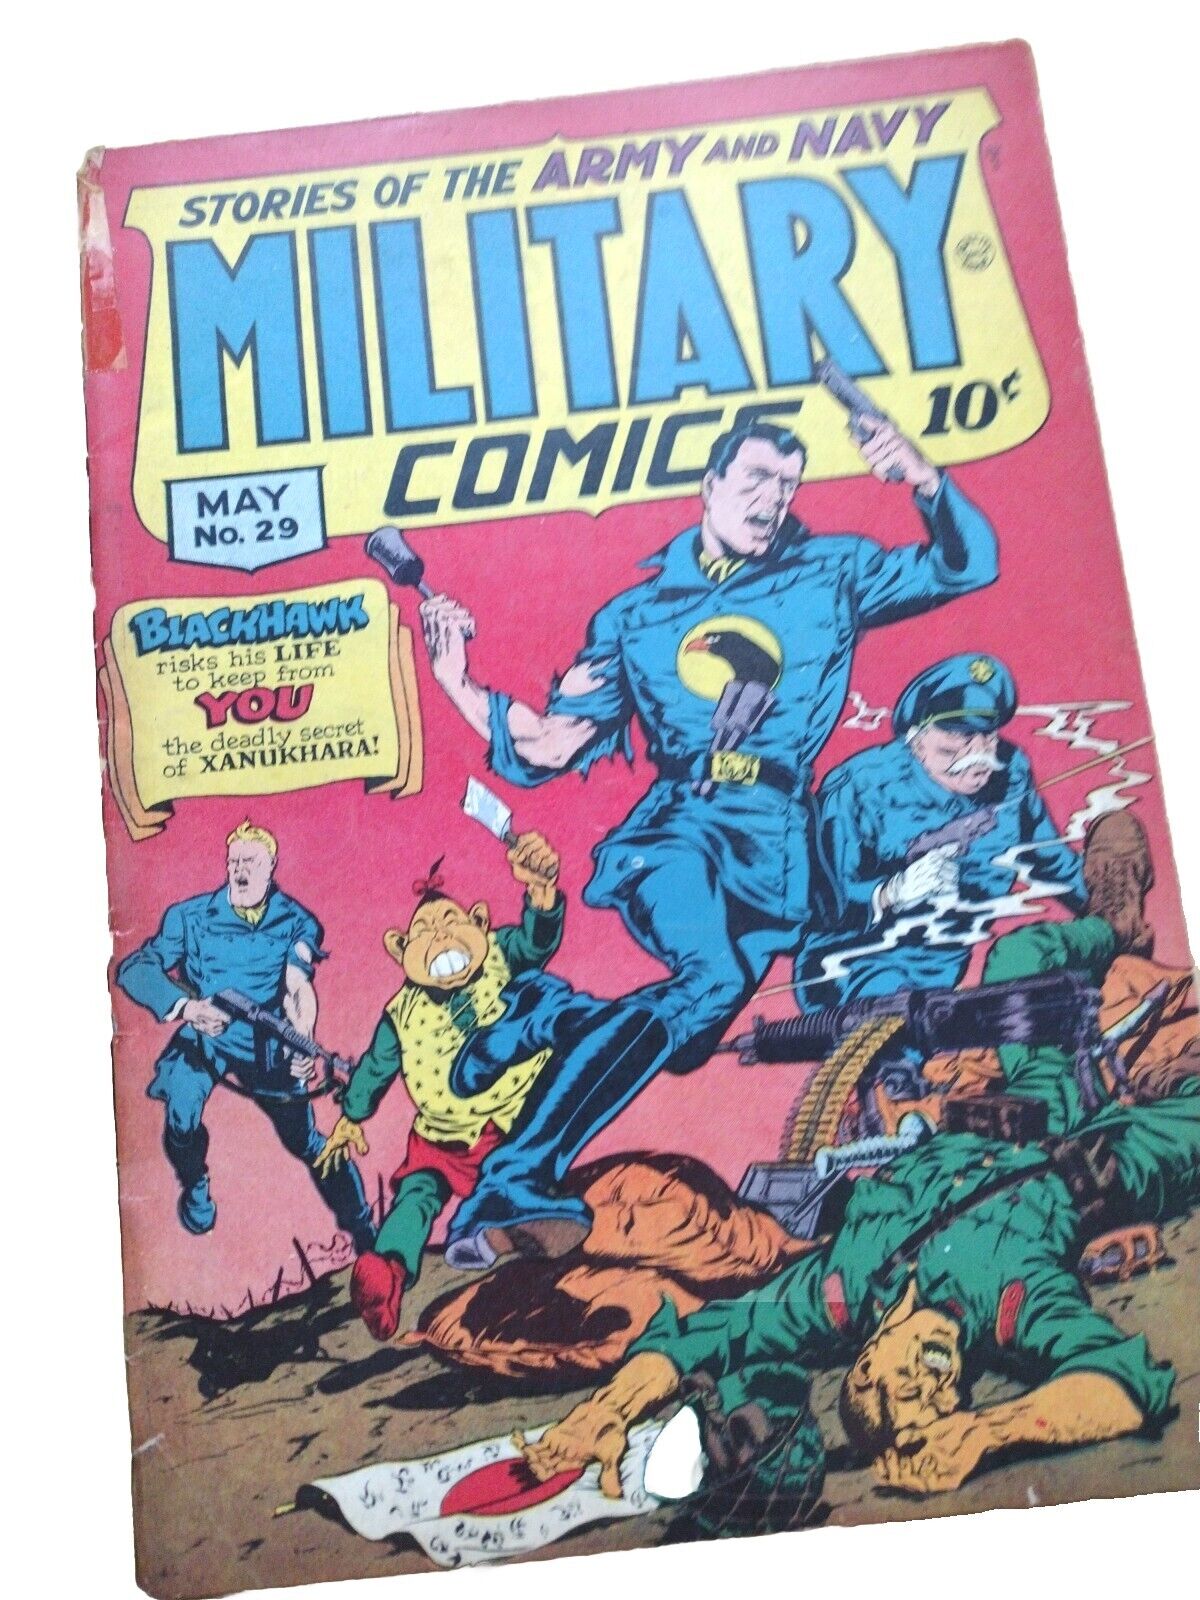 Military Comics, (May 1944)